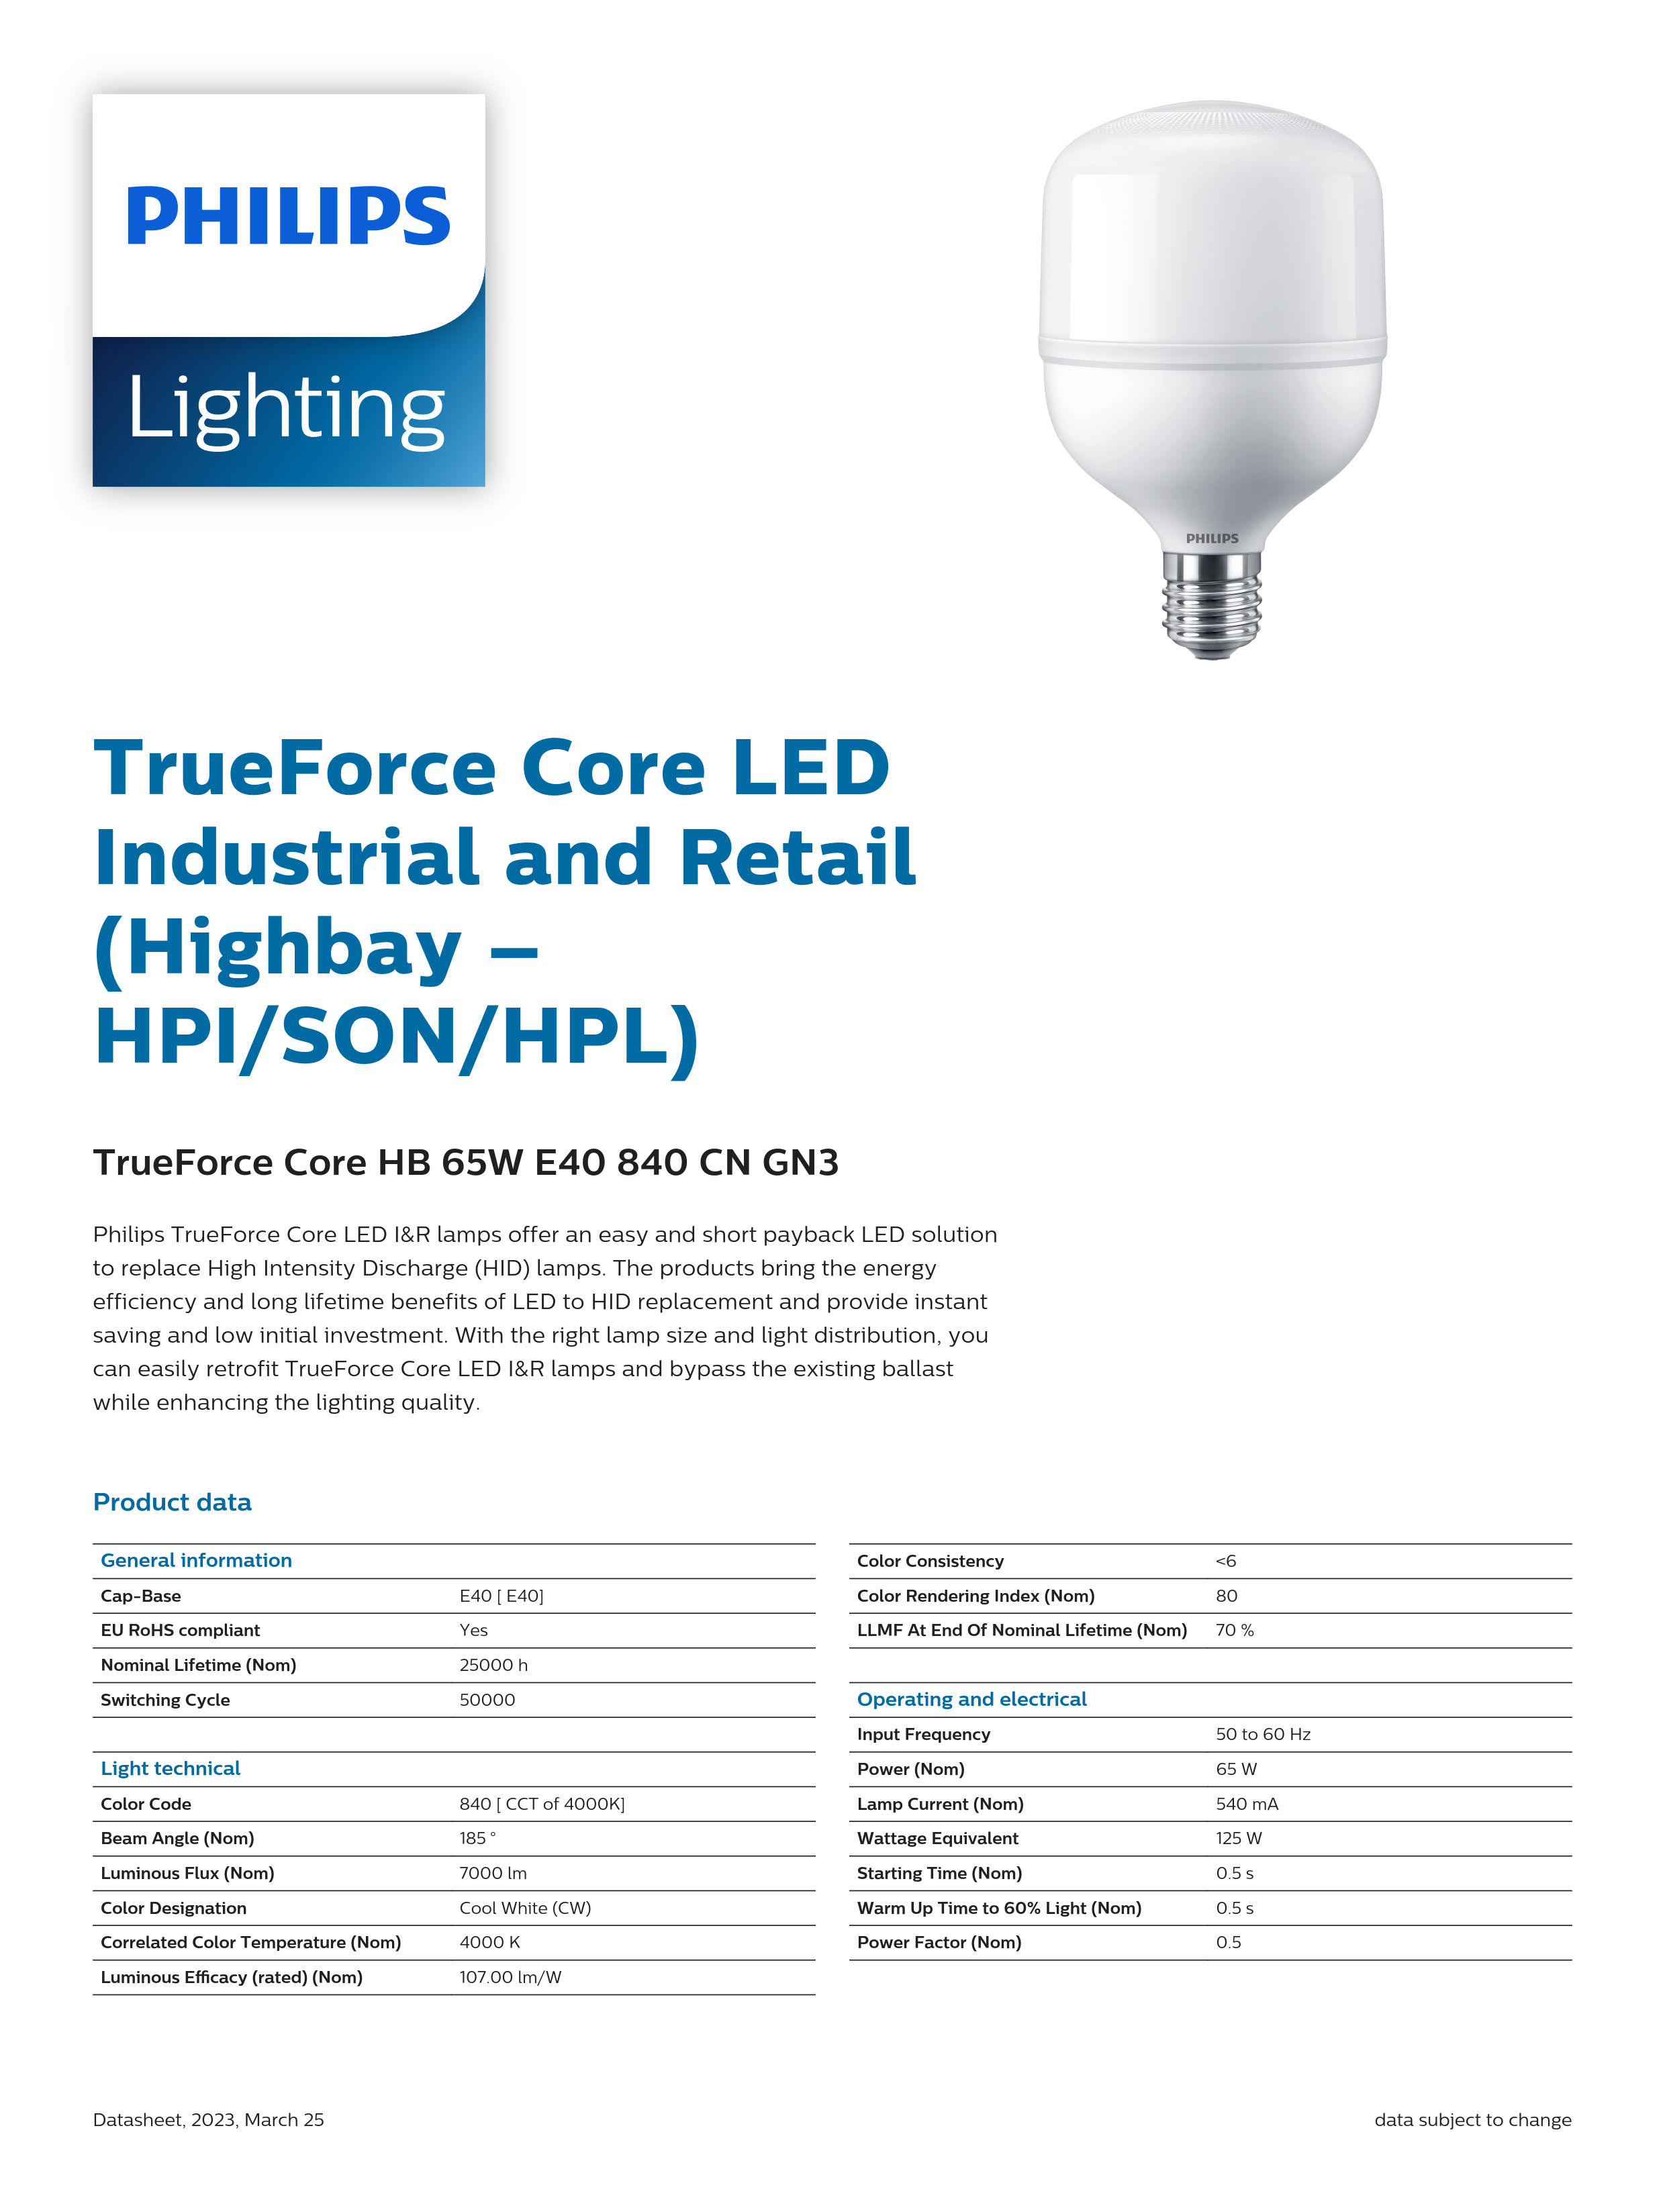 PHILIPS LED Bulb TrueForce Core HB 65W E40 865 CN GN3 929002409110